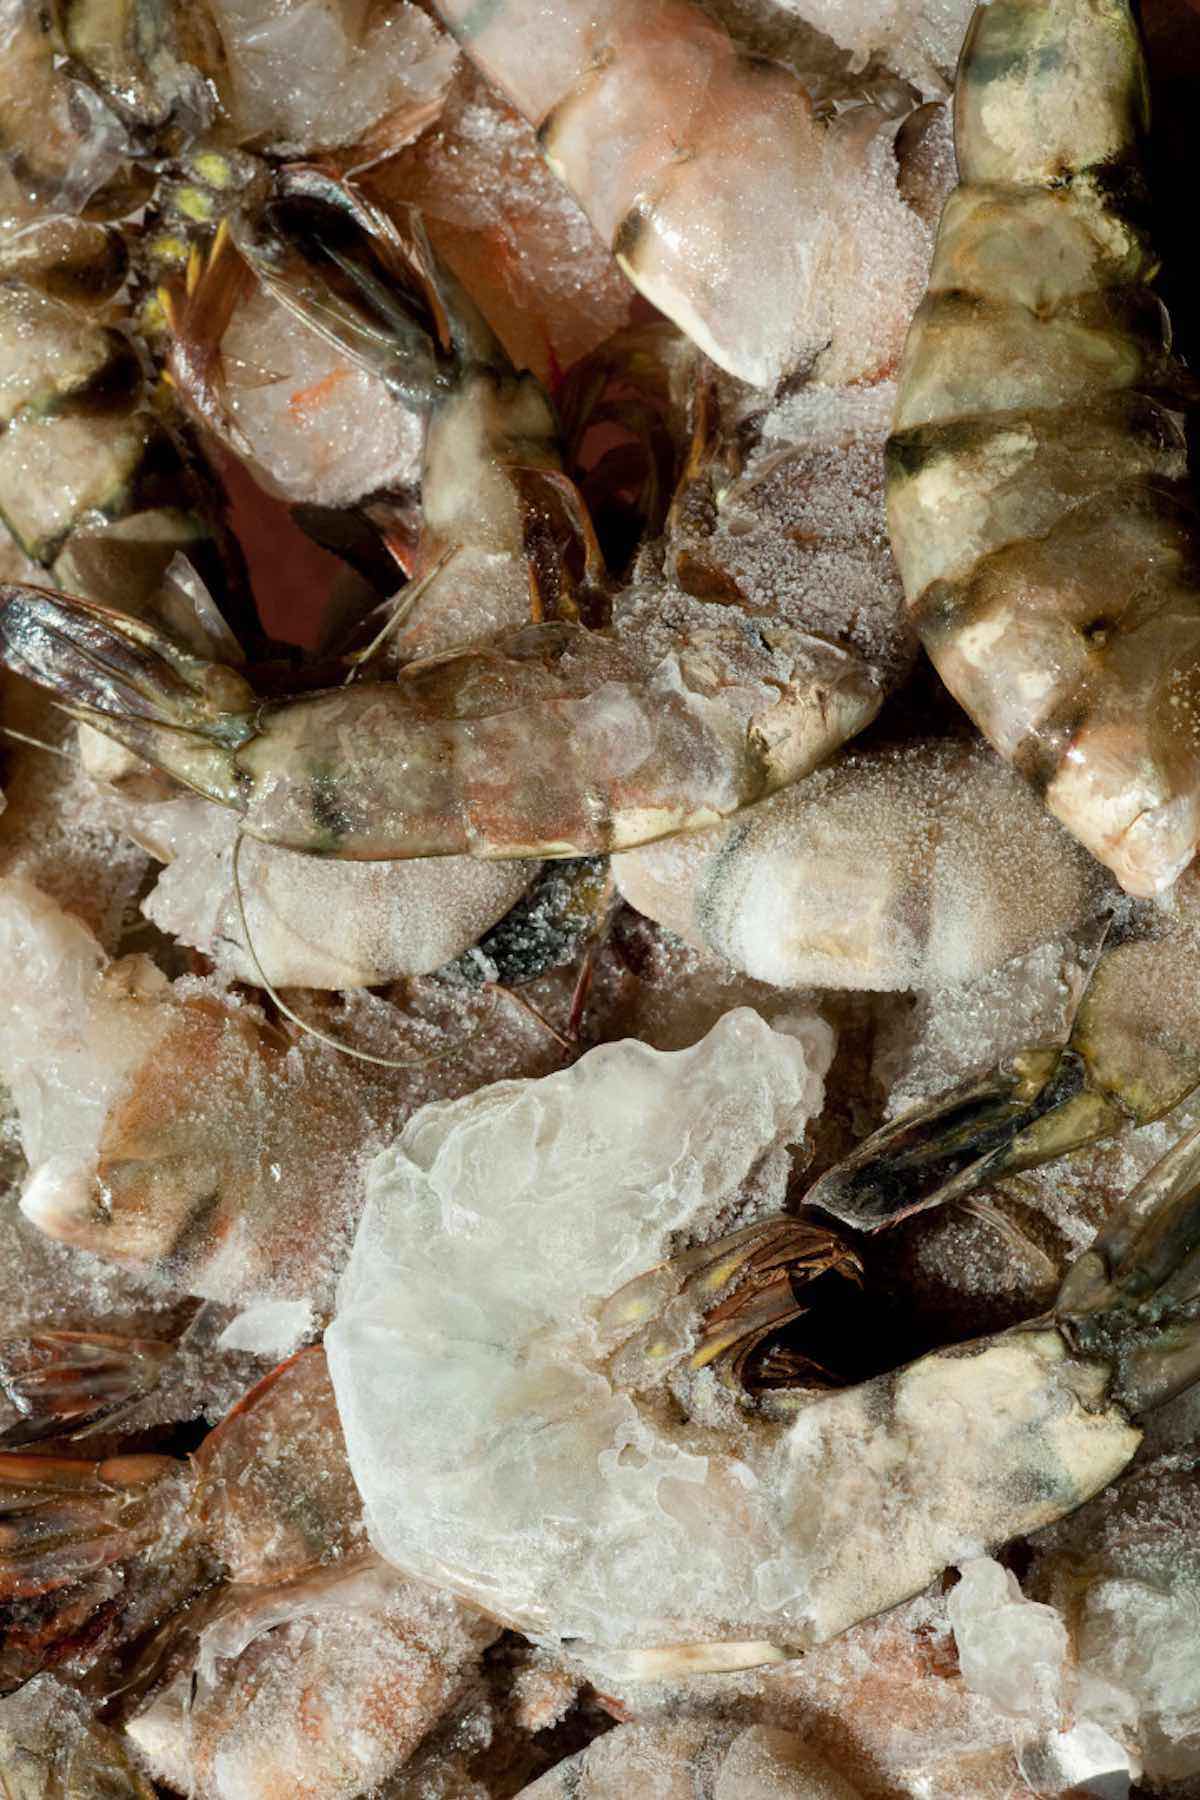 Closeup of large frozen shrimp.